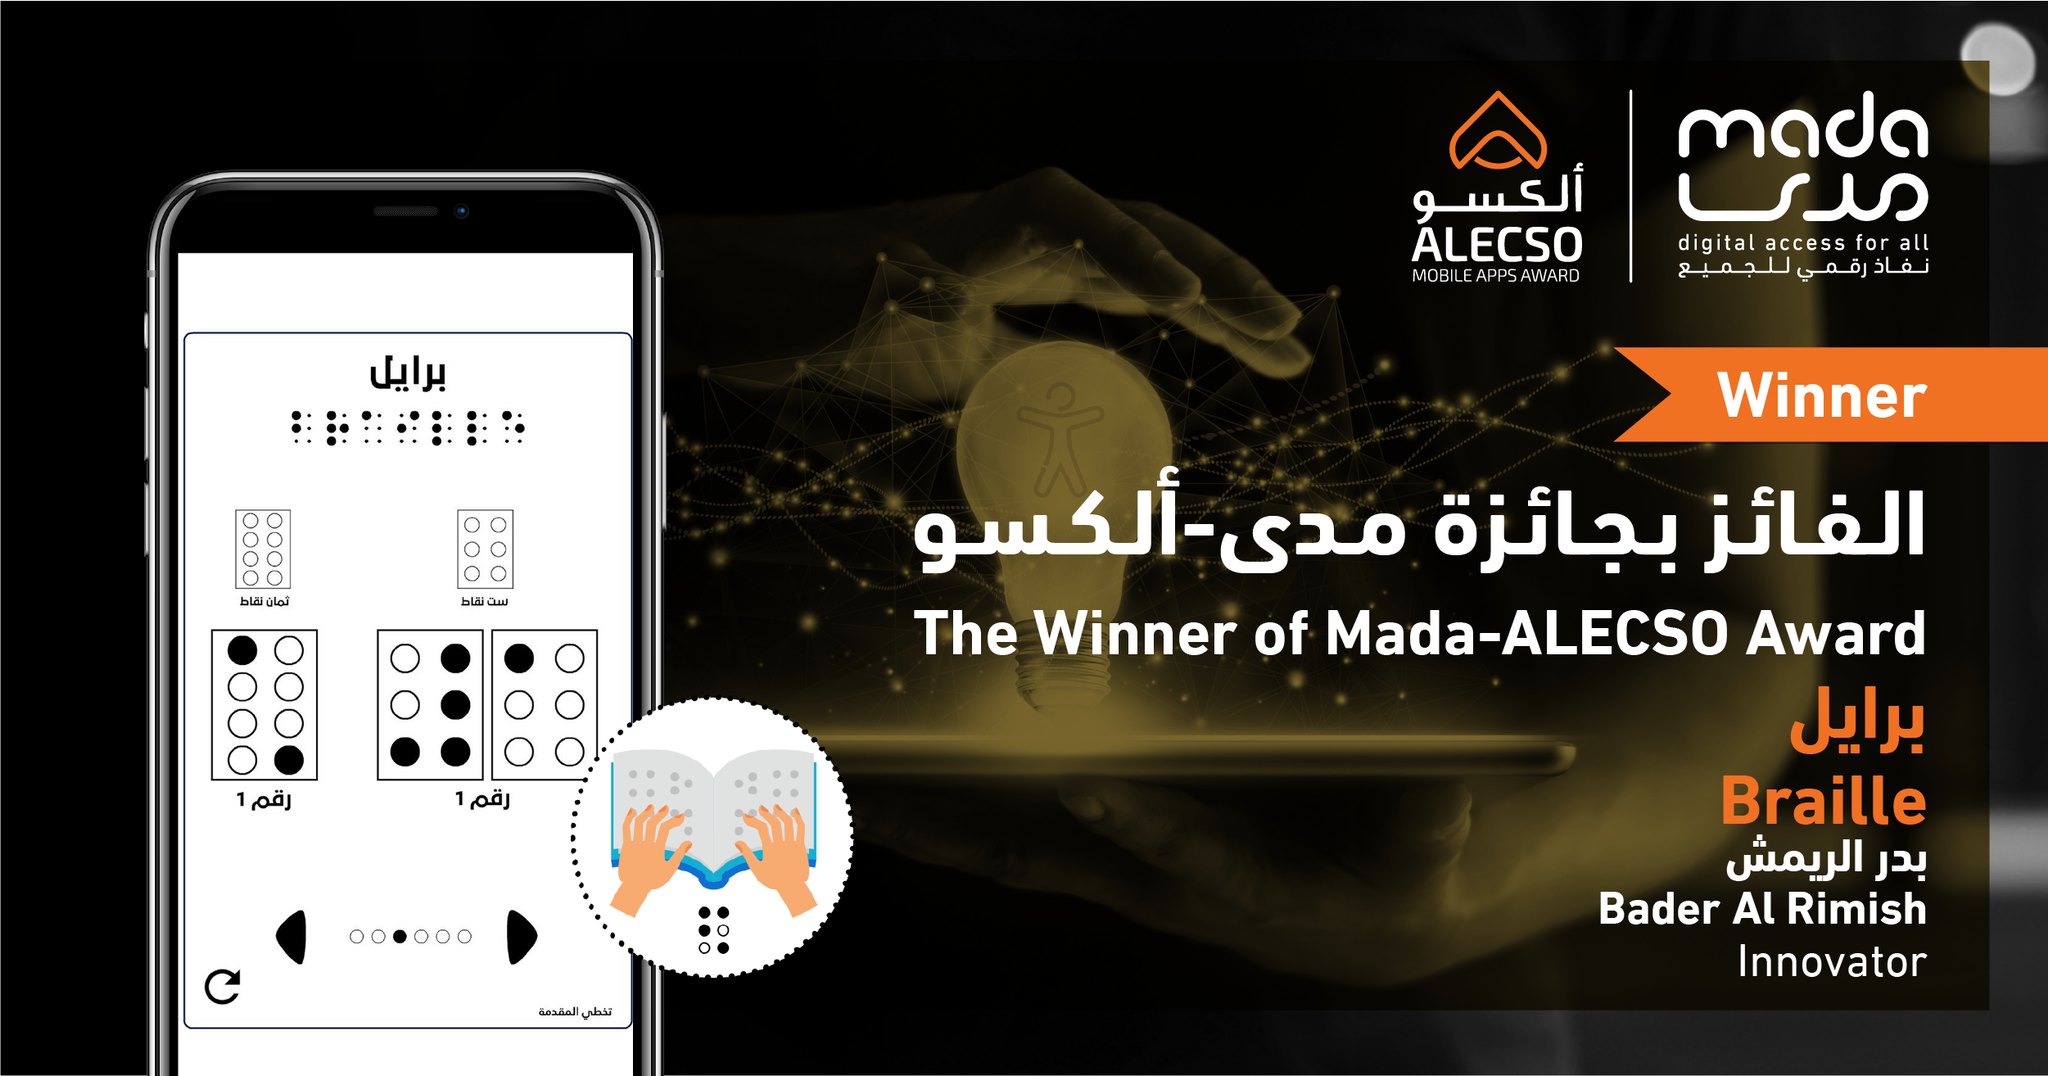 بدر الريمش يفوز بجائزة تطبيقات مدى – ألكسو 2021